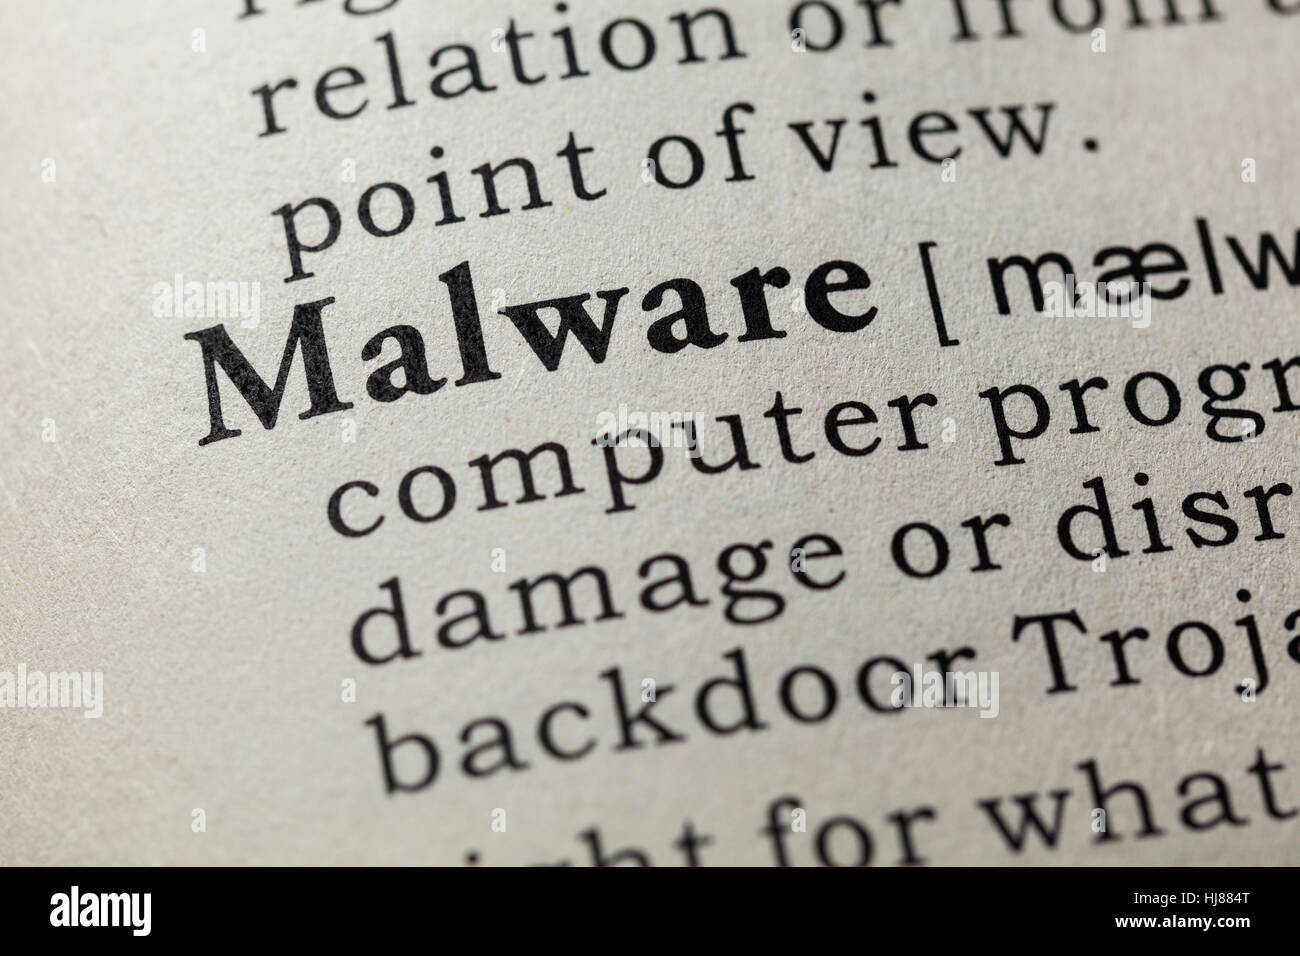 Faux dictionnaire, dictionnaire définition du mot Malware. y compris les principaux termes descriptifs. Banque D'Images